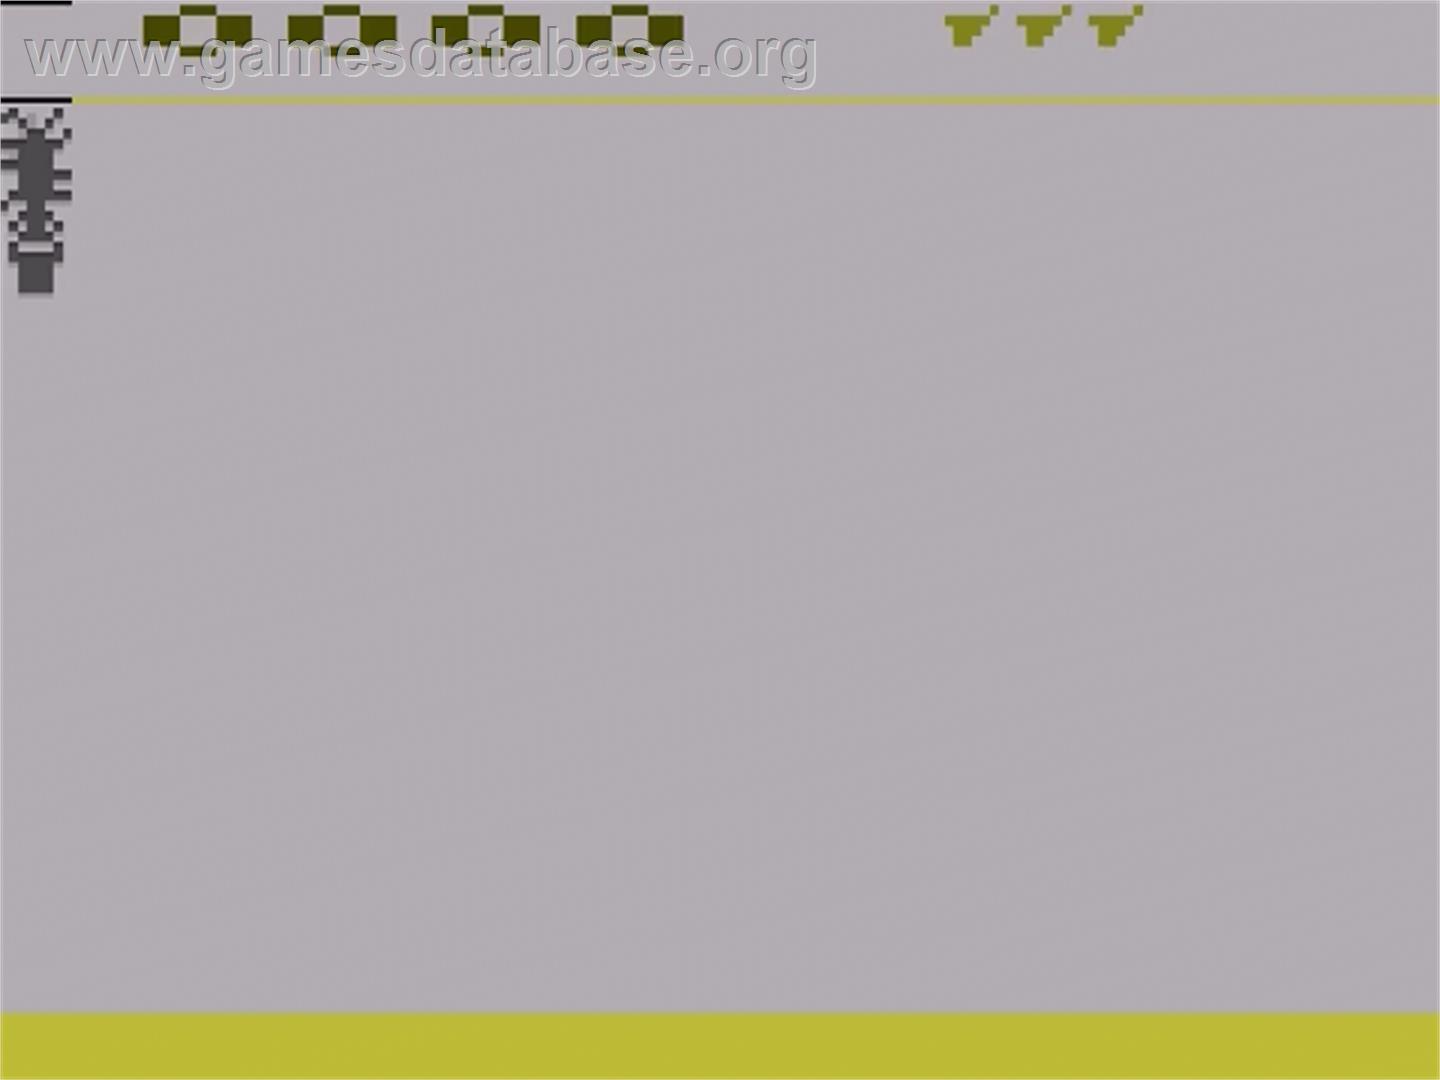 Cosmic Swarm - Atari 2600 - Artwork - Title Screen